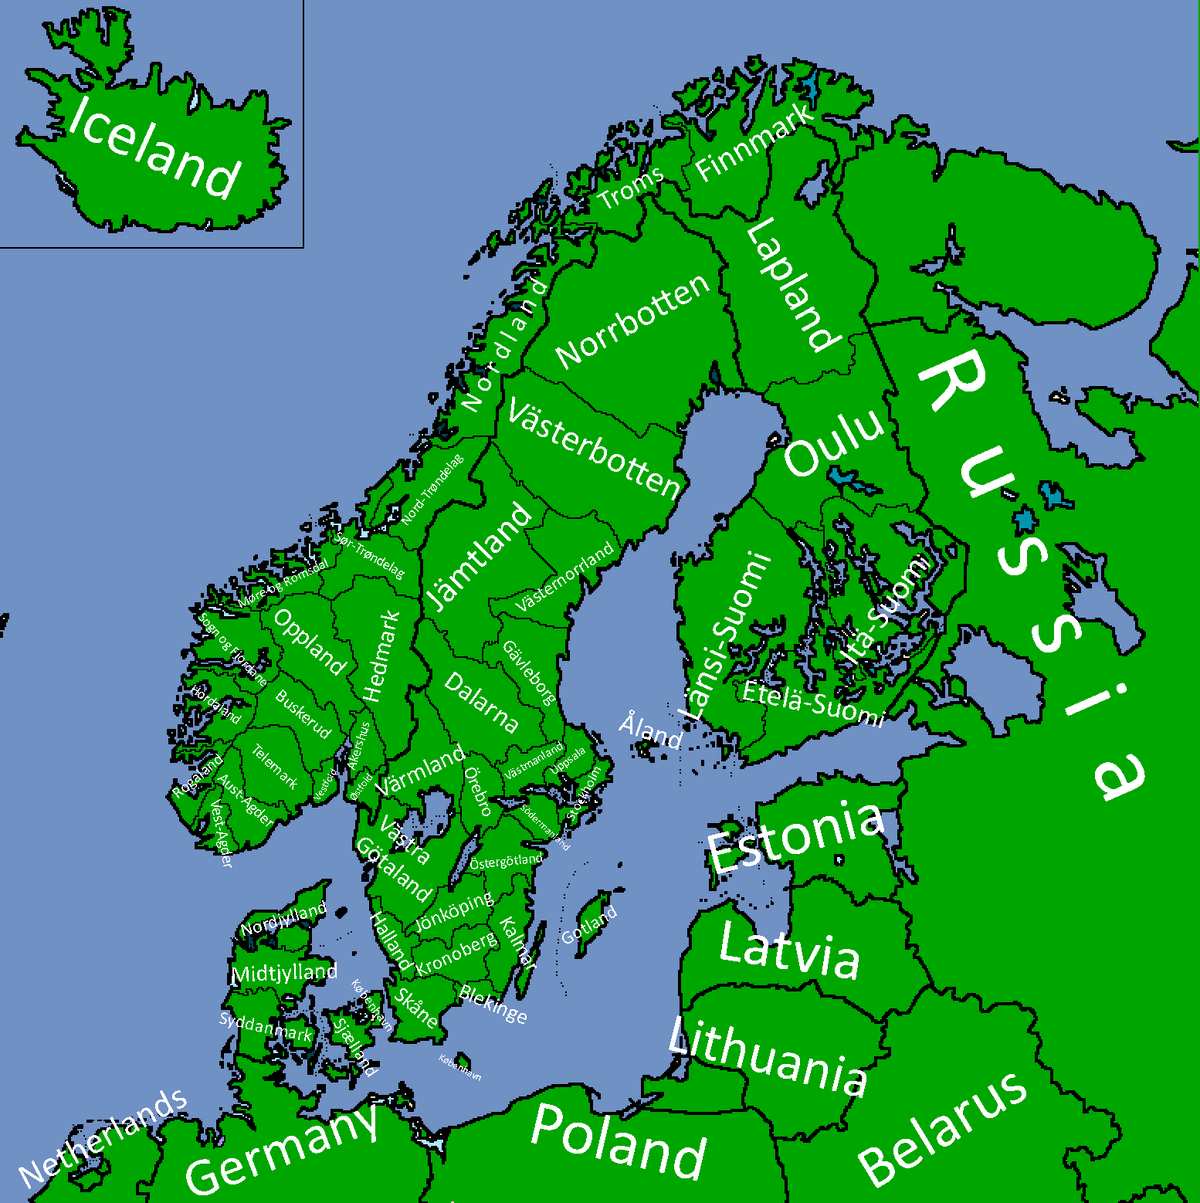 scandinavian map